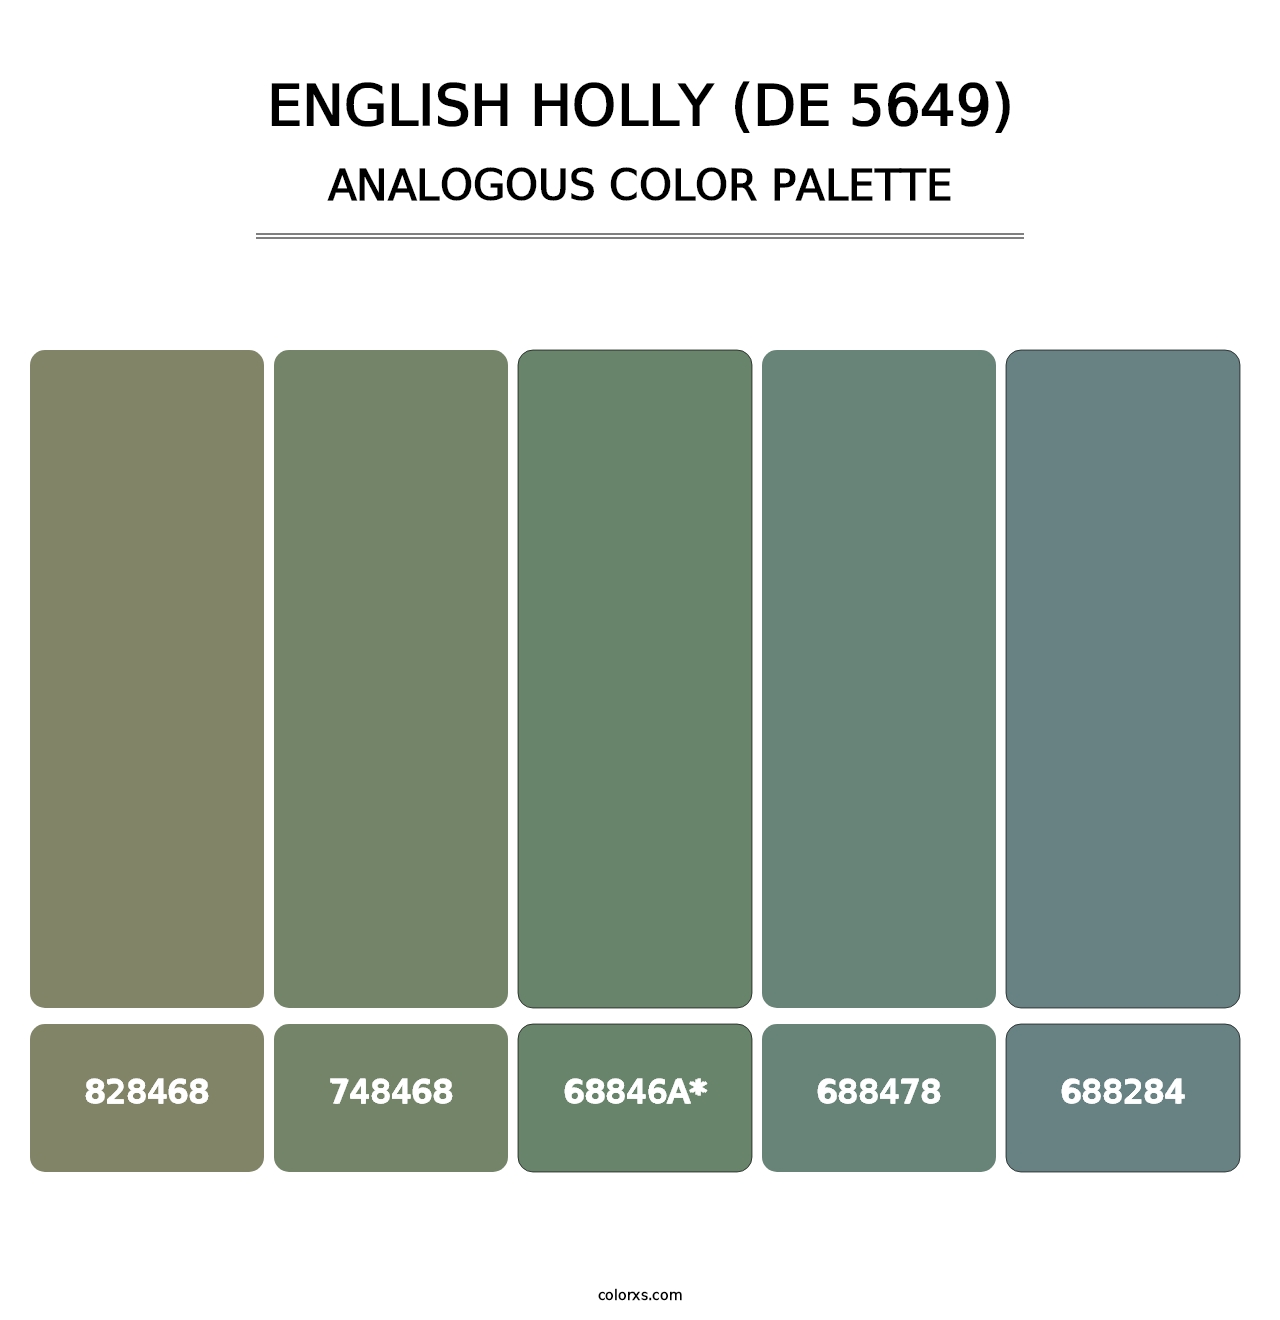 English Holly (DE 5649) - Analogous Color Palette